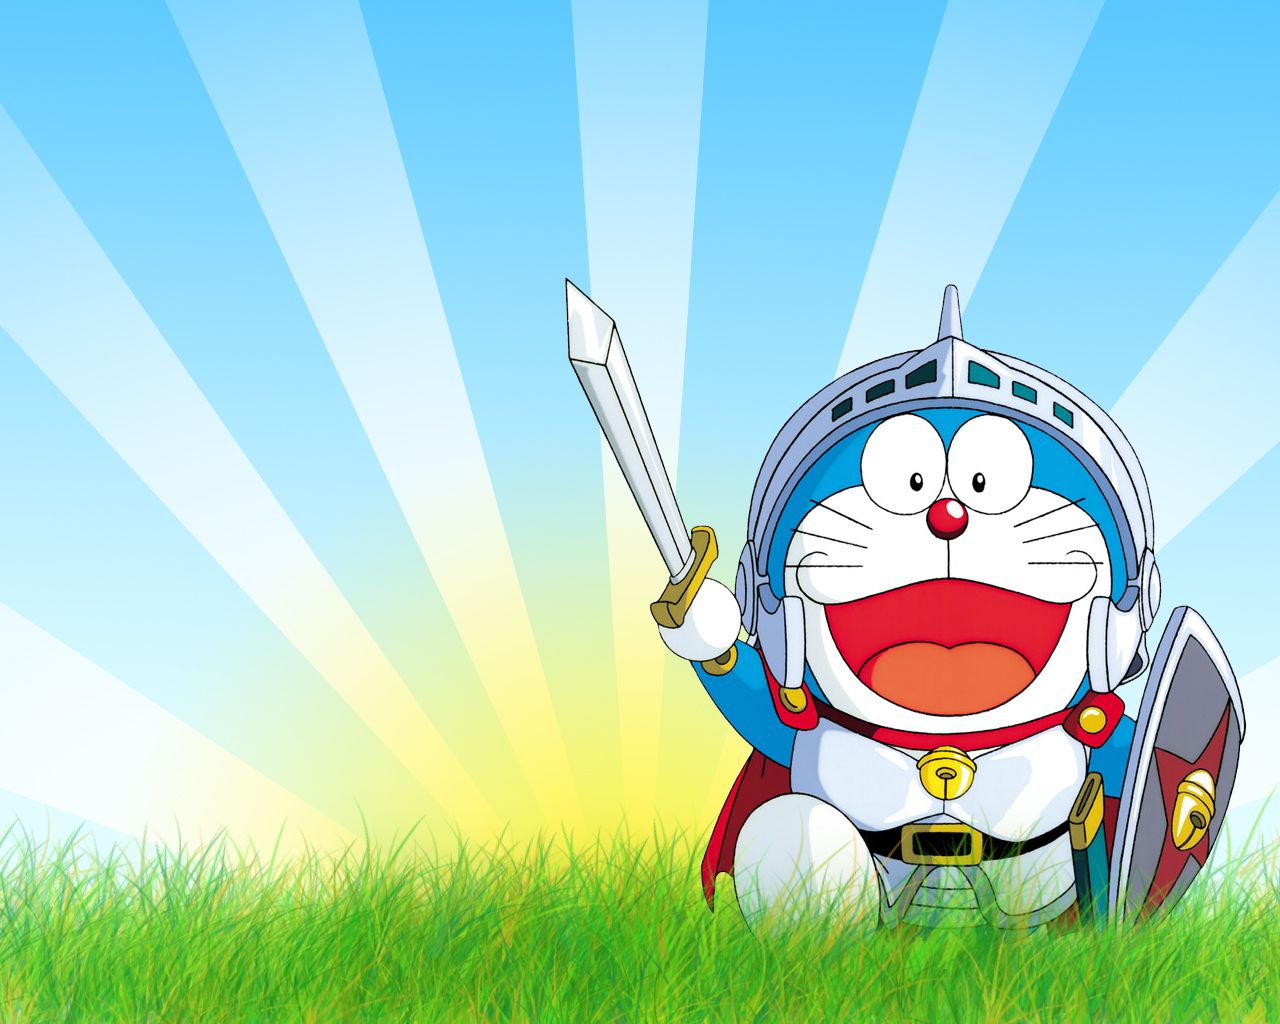 Bạn đang tìm kiếm những hình ảnh Doraemon sống động và đáng yêu để làm hình nền điện thoại hay desktop? Với nhiều lựa chọn về kích thước và độ phân giải, bạn hoàn toàn có thể tìm được những hình ảnh Doraemon ưng ý và trang trí cho thiết bị của mình.